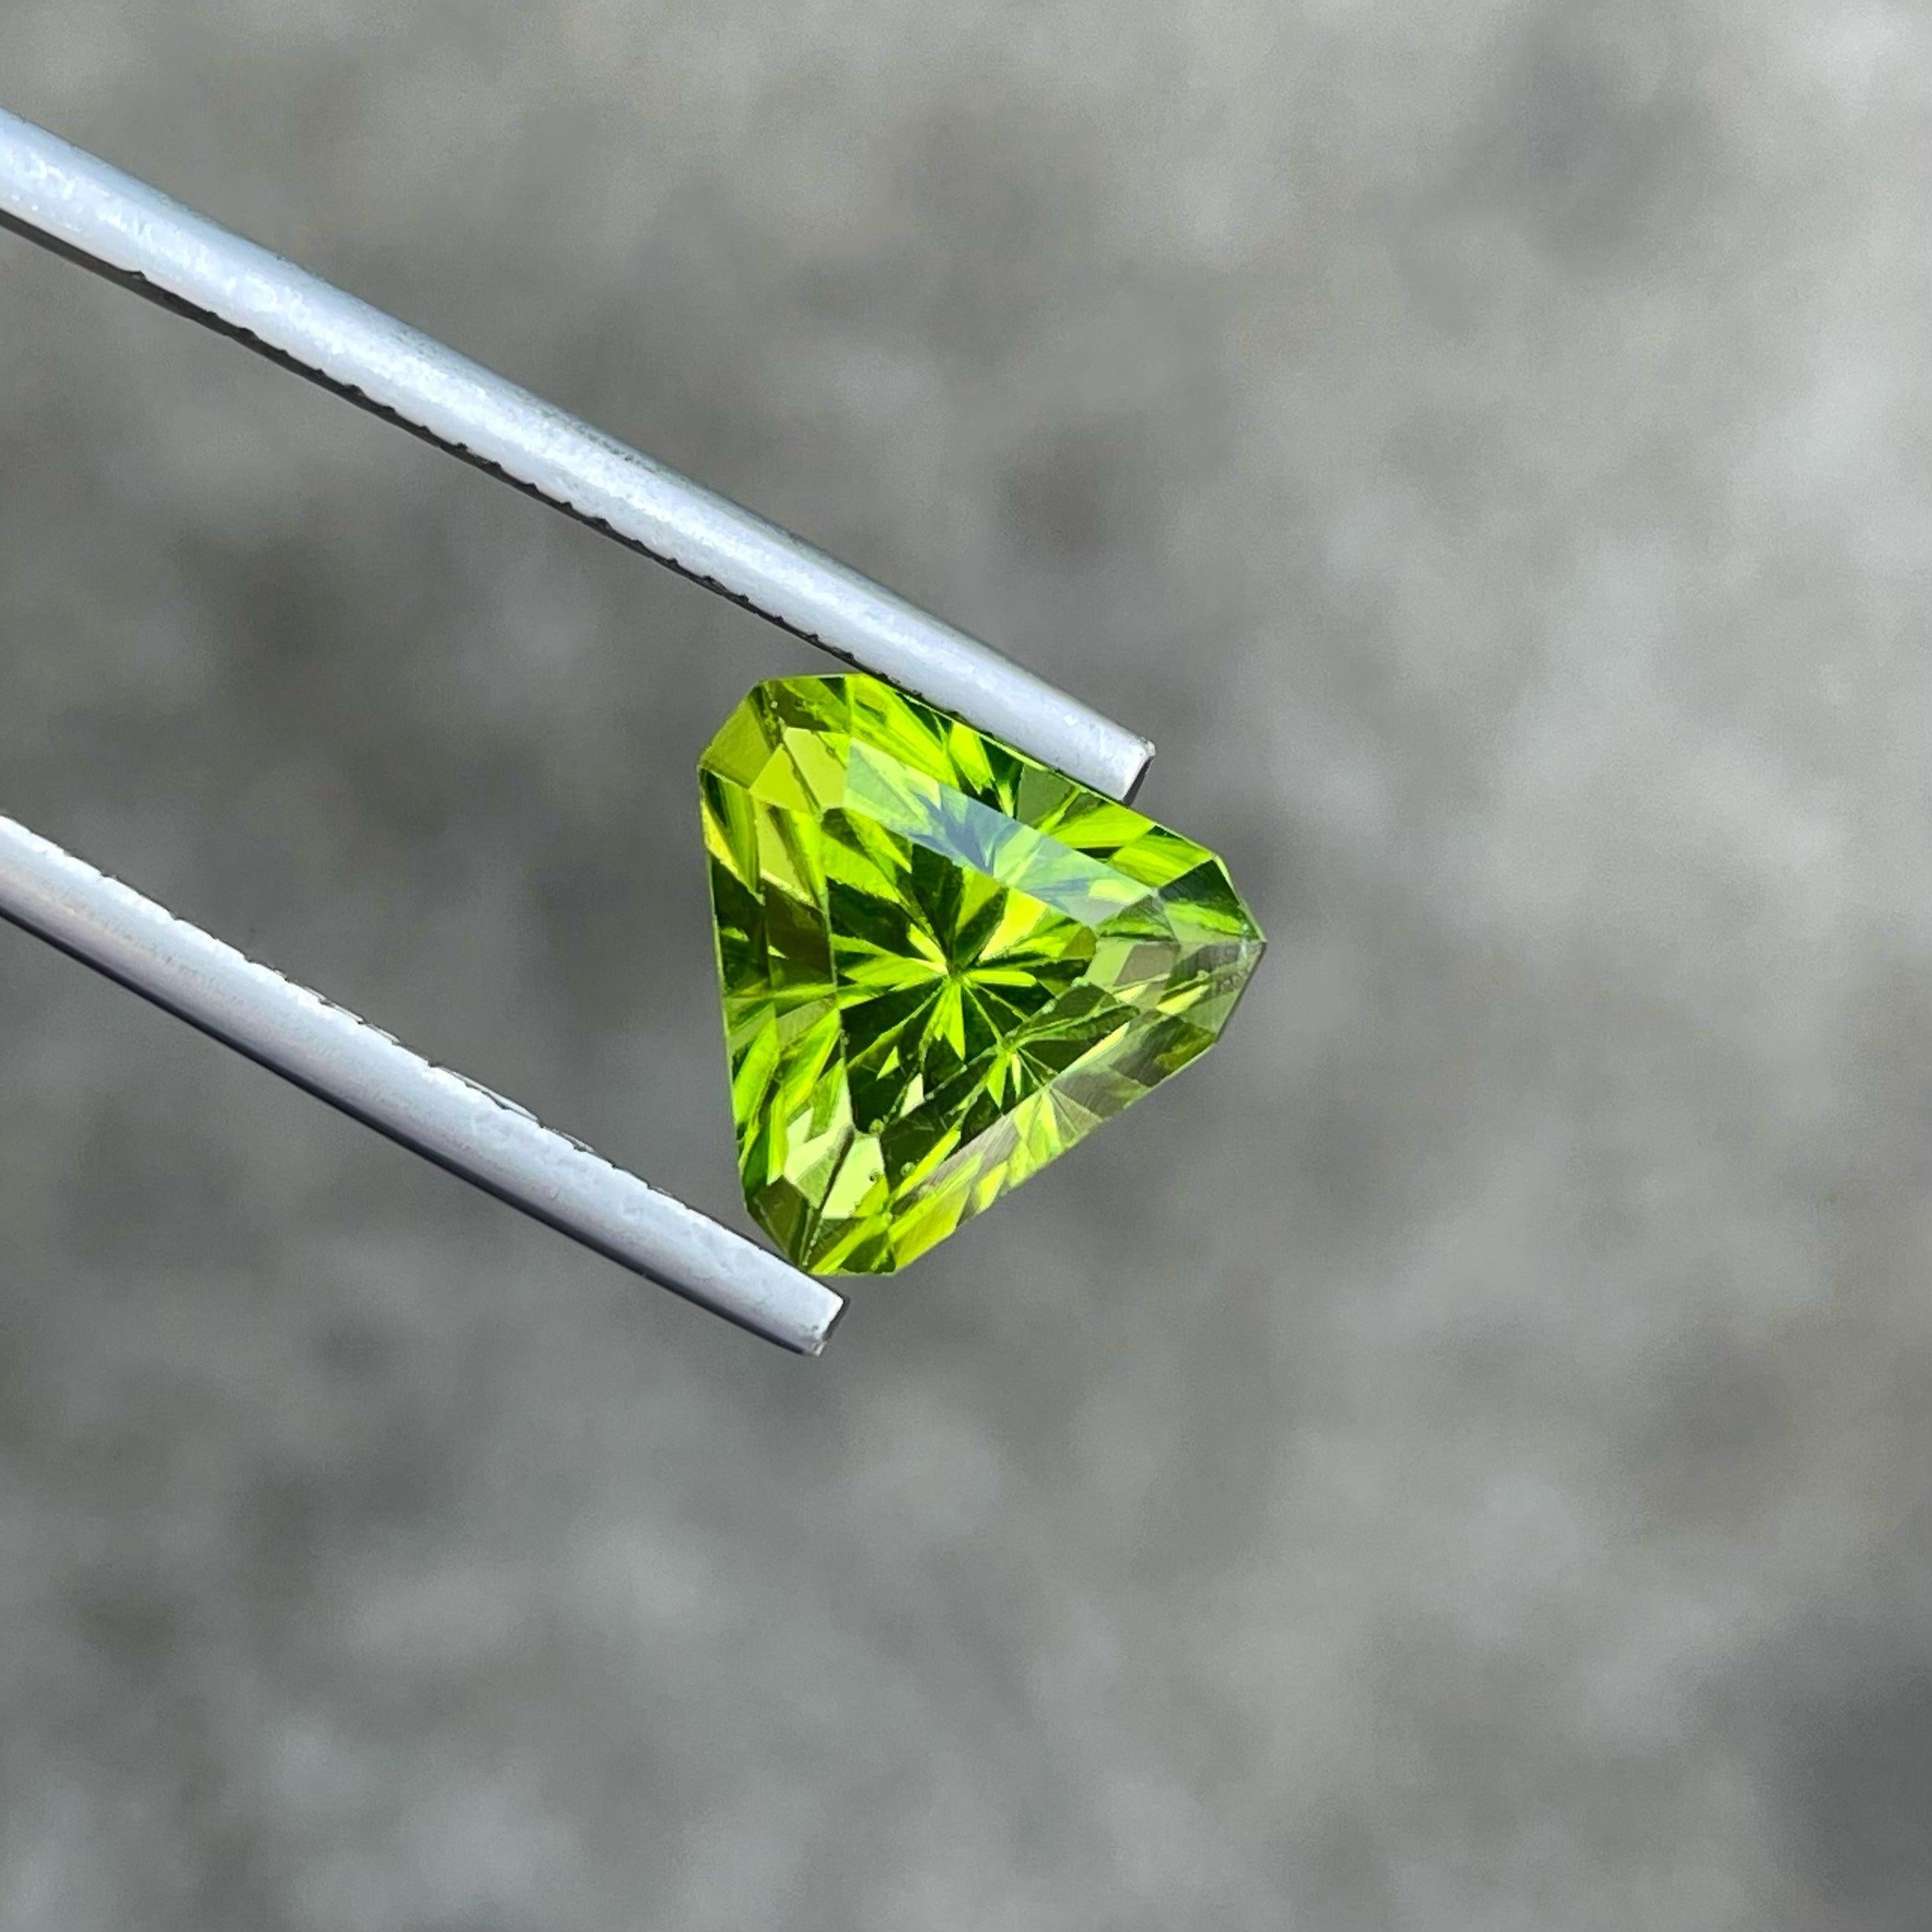 Fantastic Trilliant Cut Natural Peridot Edelstein von 4,75 Karat aus Pakistan hat einen wunderbaren Schliff in einem  Dreieckige Form, unglaublich grüne Farbe. Große Brillanz. Dieser Edelstein ist SI Clarity.

Informationen zum